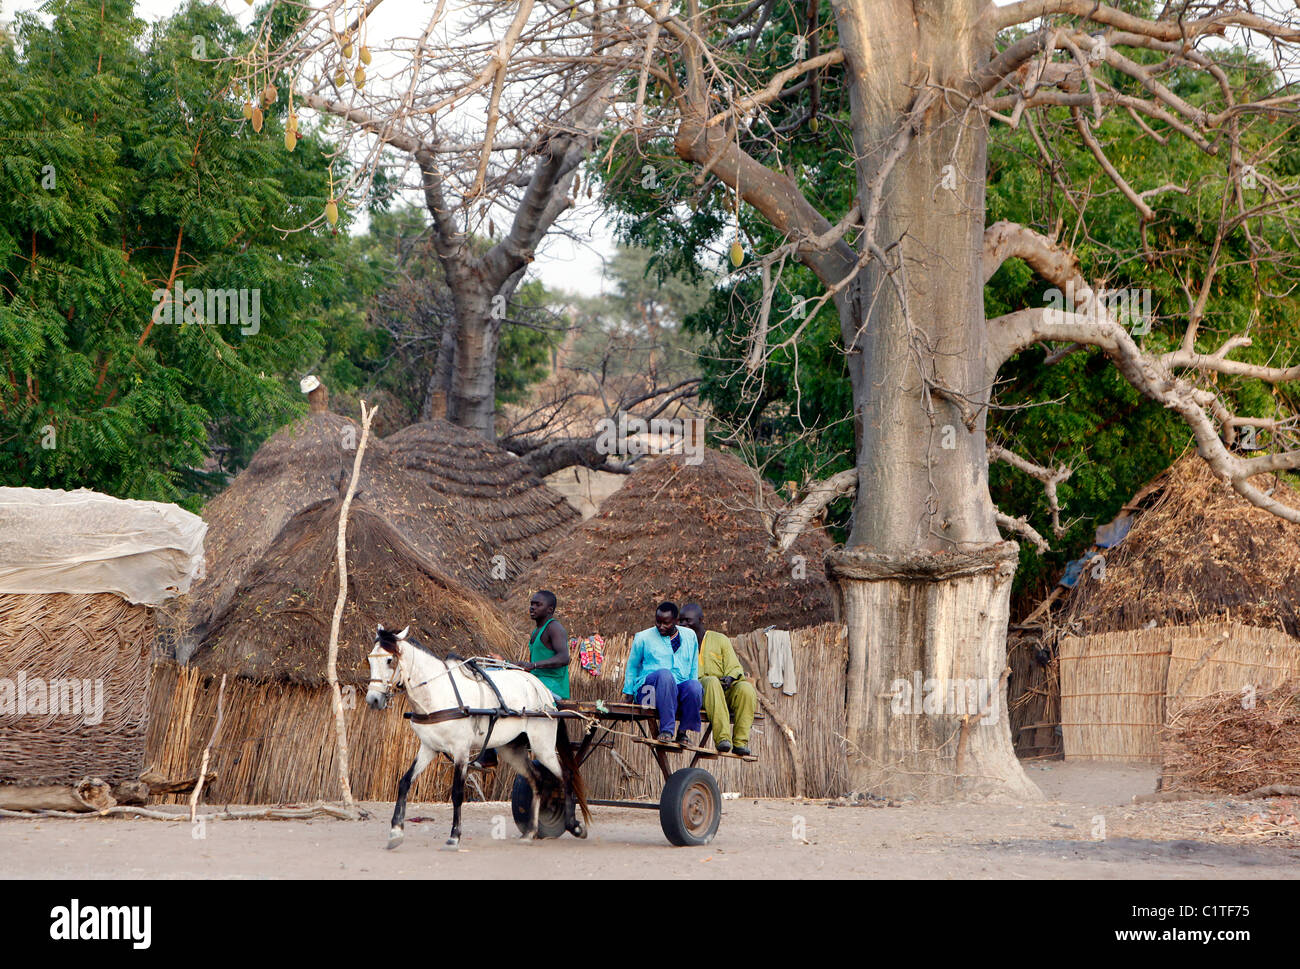 Cheval et panier dans le village de huttes circulaires de chaume Farar, Sénégal, Afrique Banque D'Images